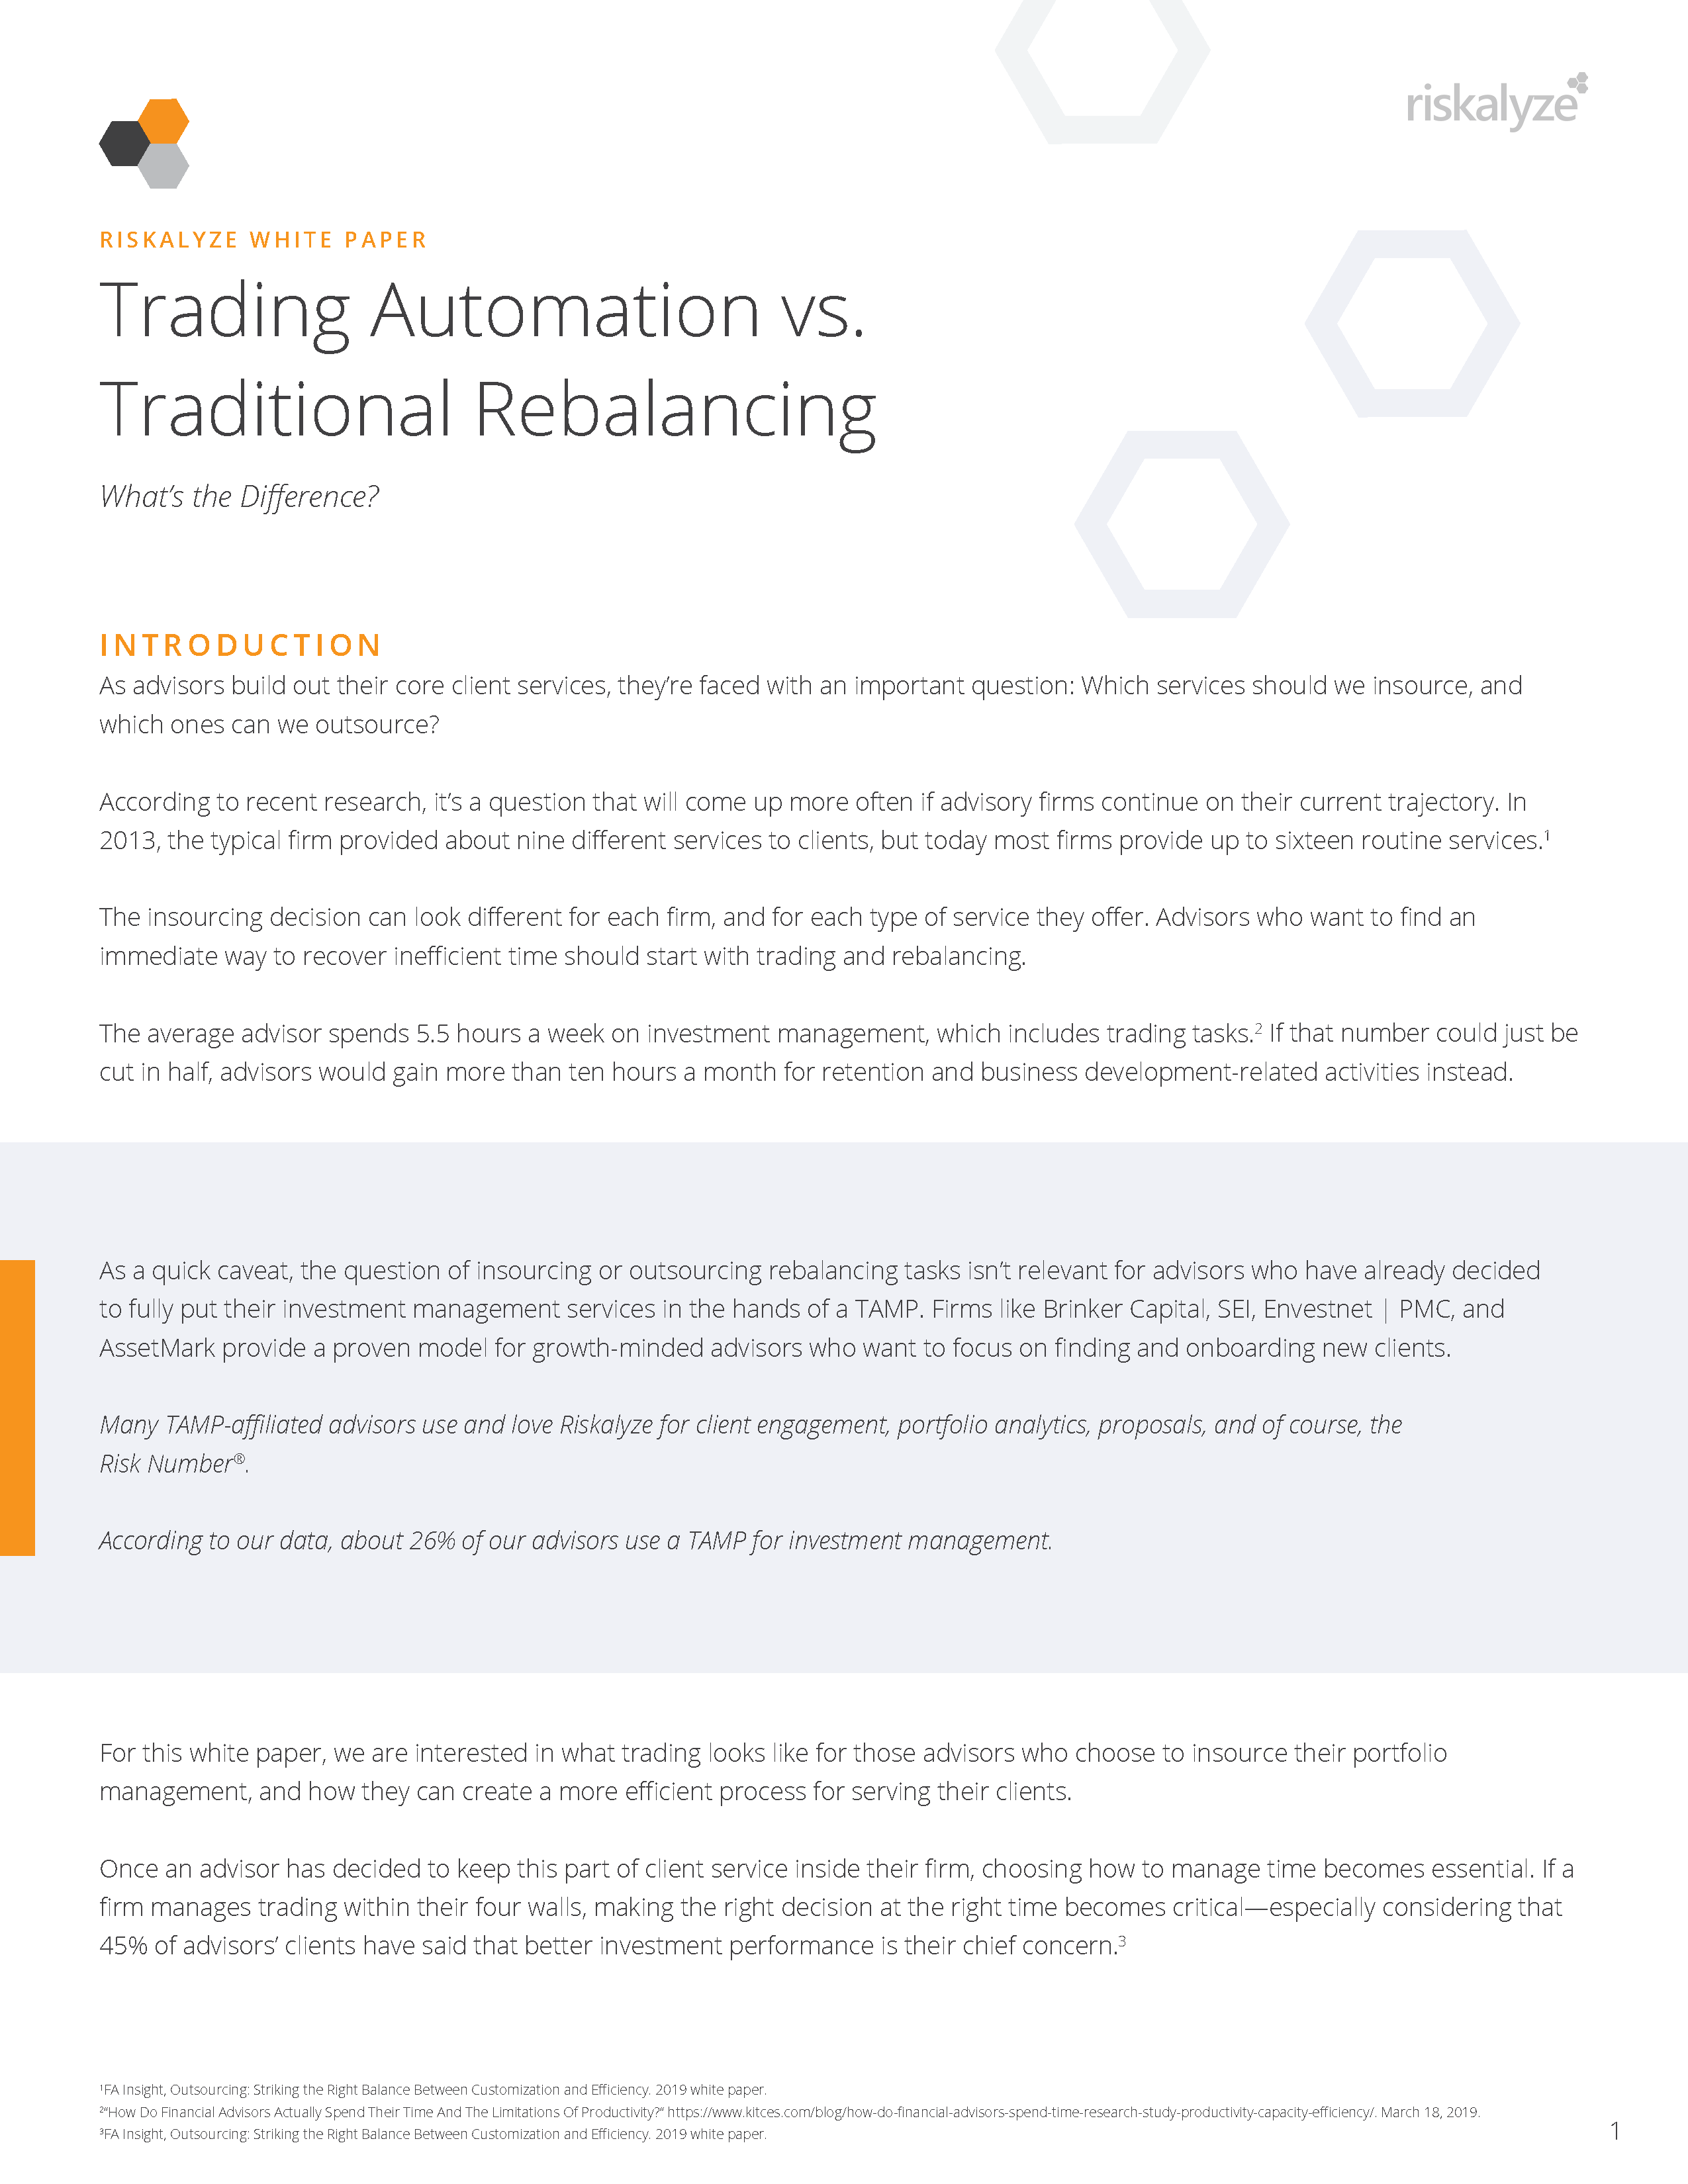 Trading Automation vs. Traditional Rebalancing